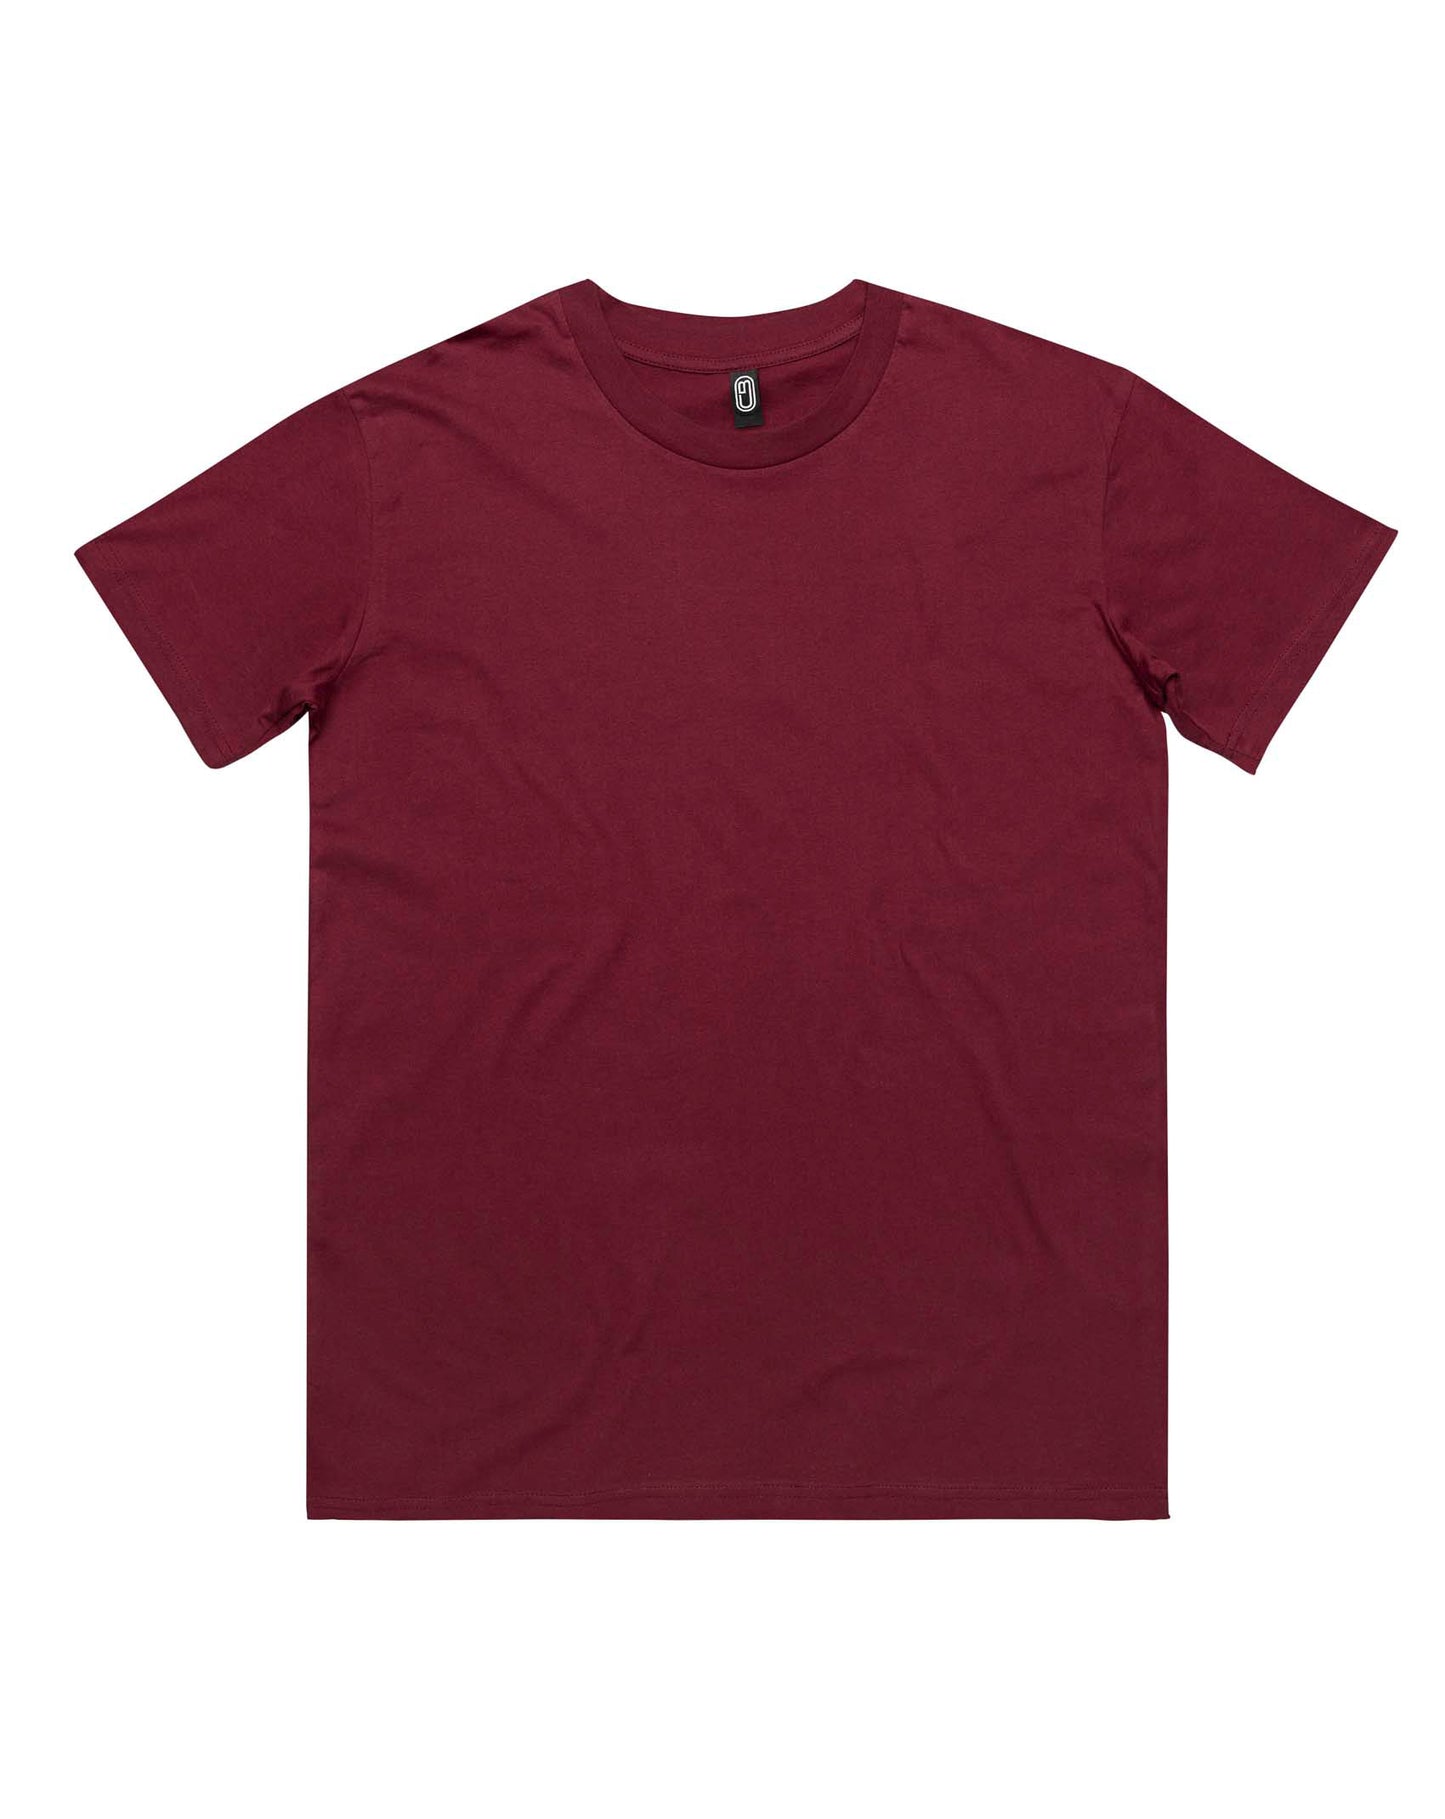 CB Clothing - Men's Classic T-Shirt